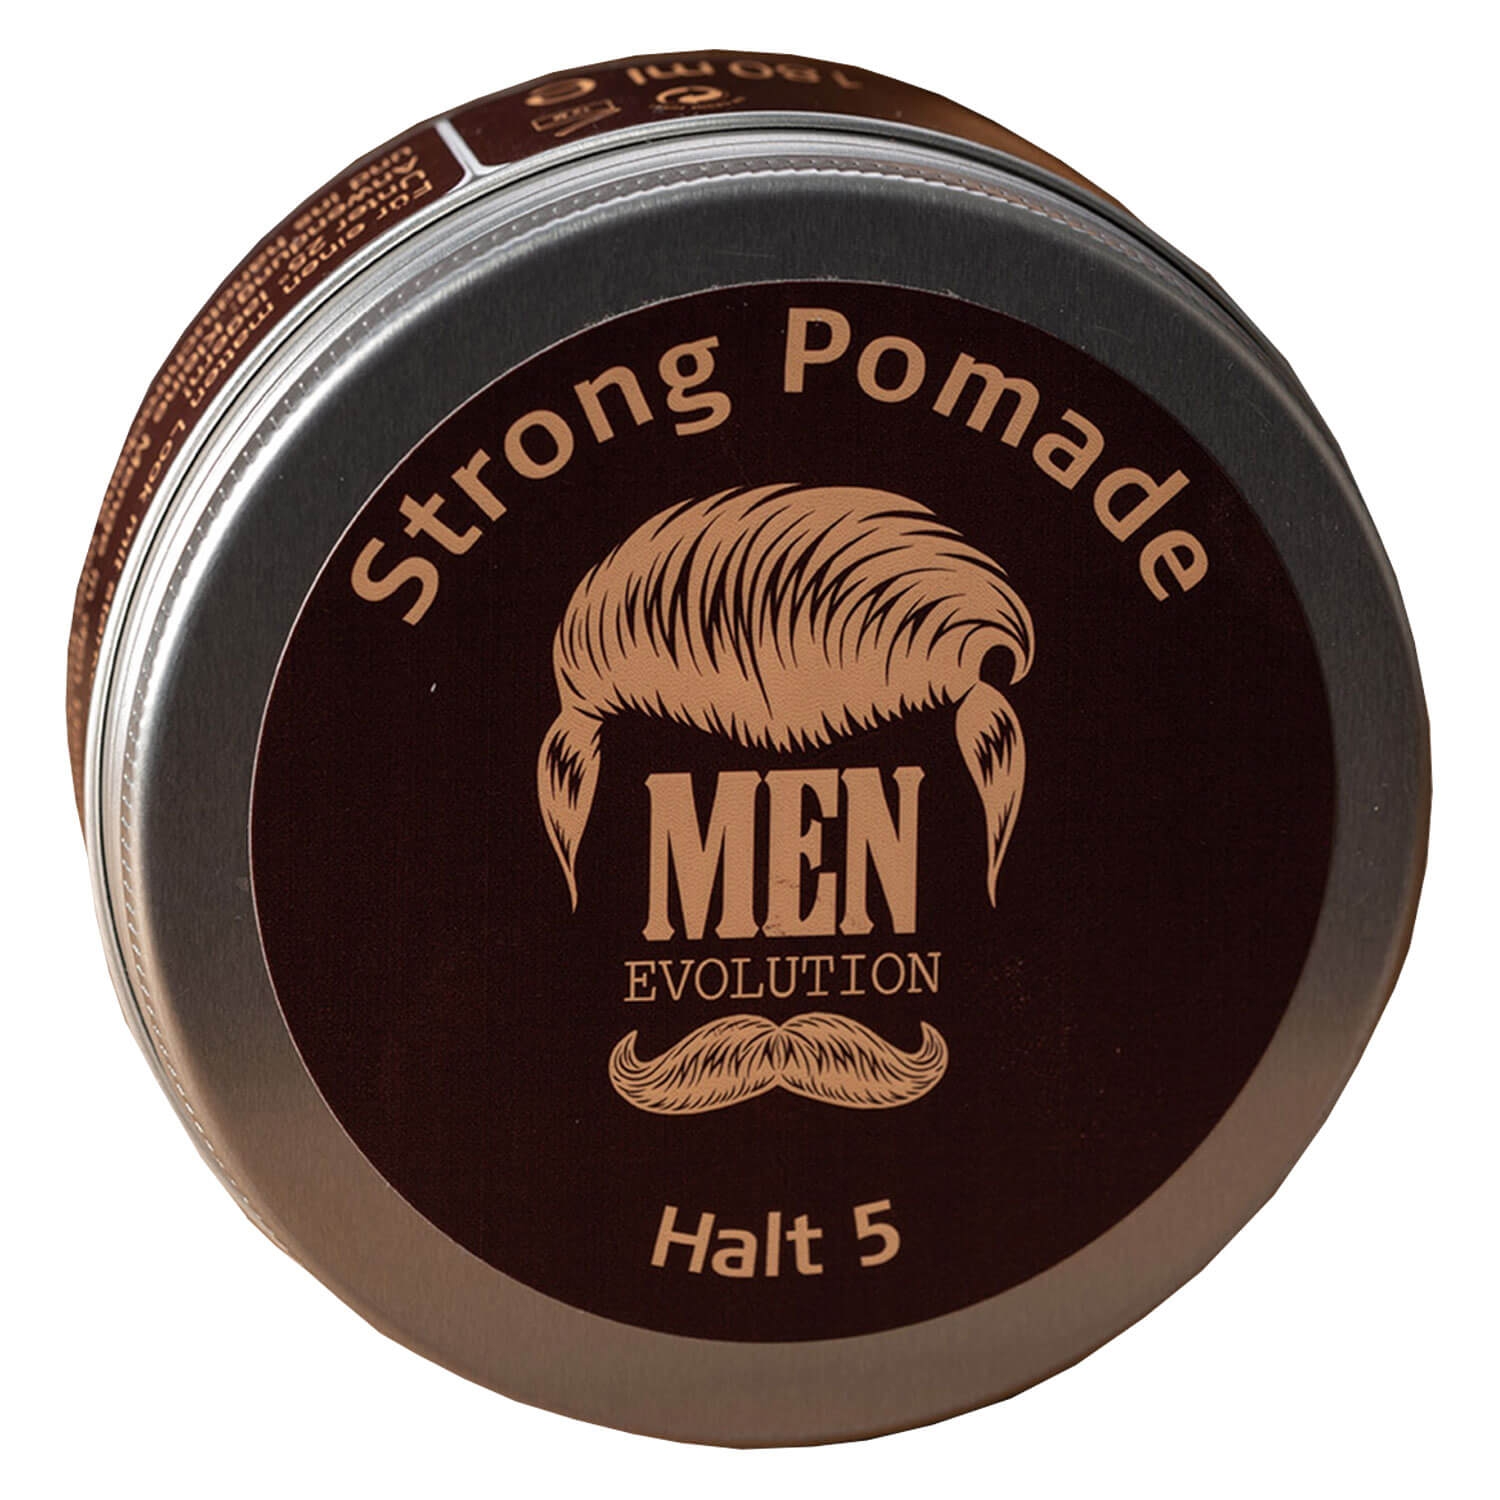 Produktbild von MEN Evolution - Strong Pomade